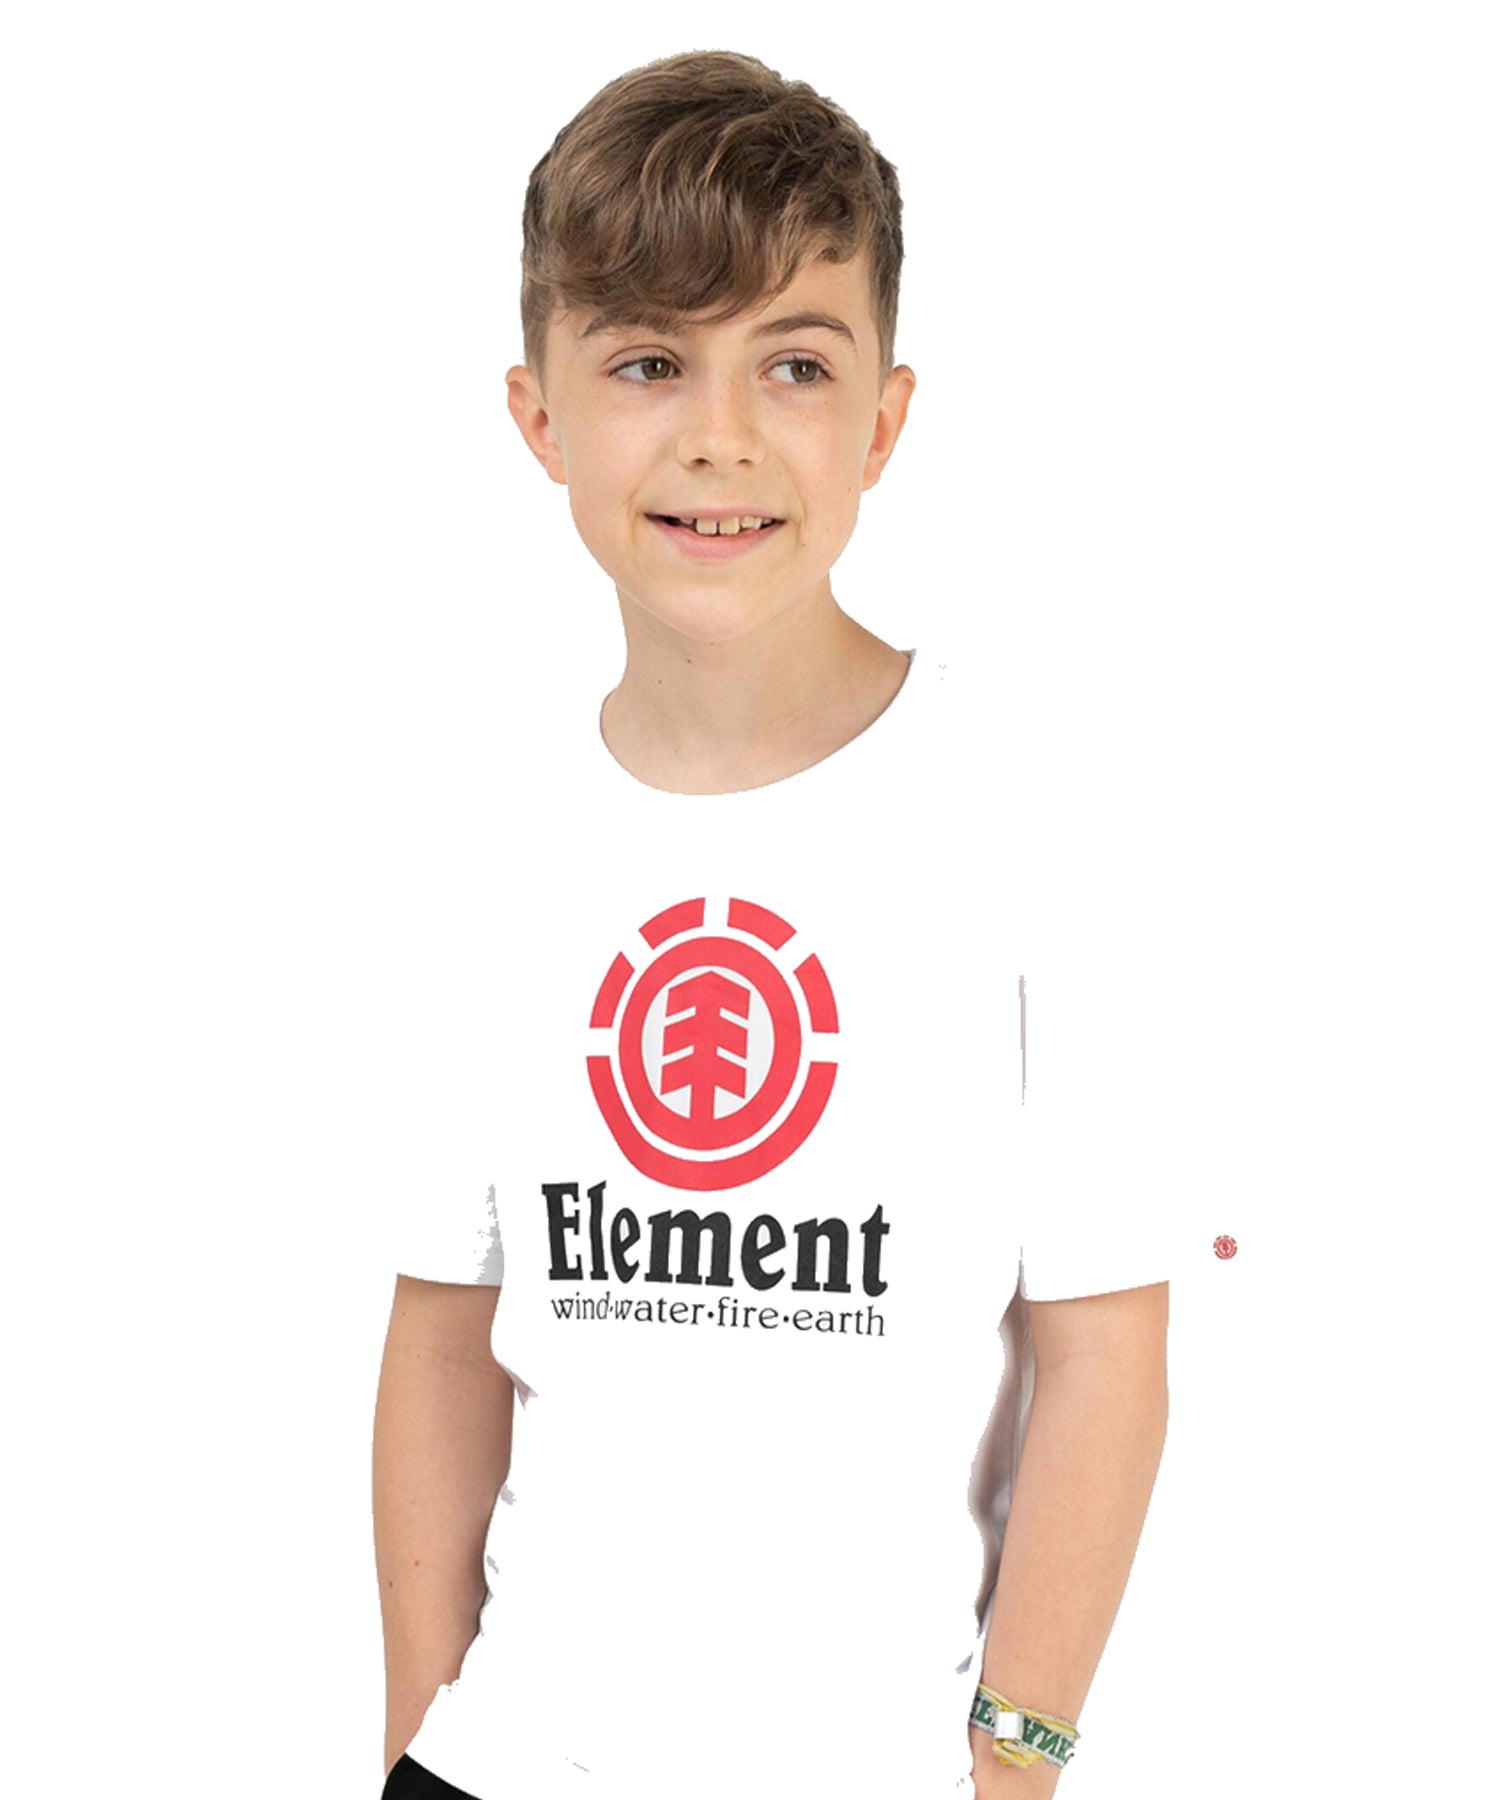 element vertical-army seal white-sudadera-niños/as-color blanco-algodón orgánico-160 grms-logo grande element en el pecho.